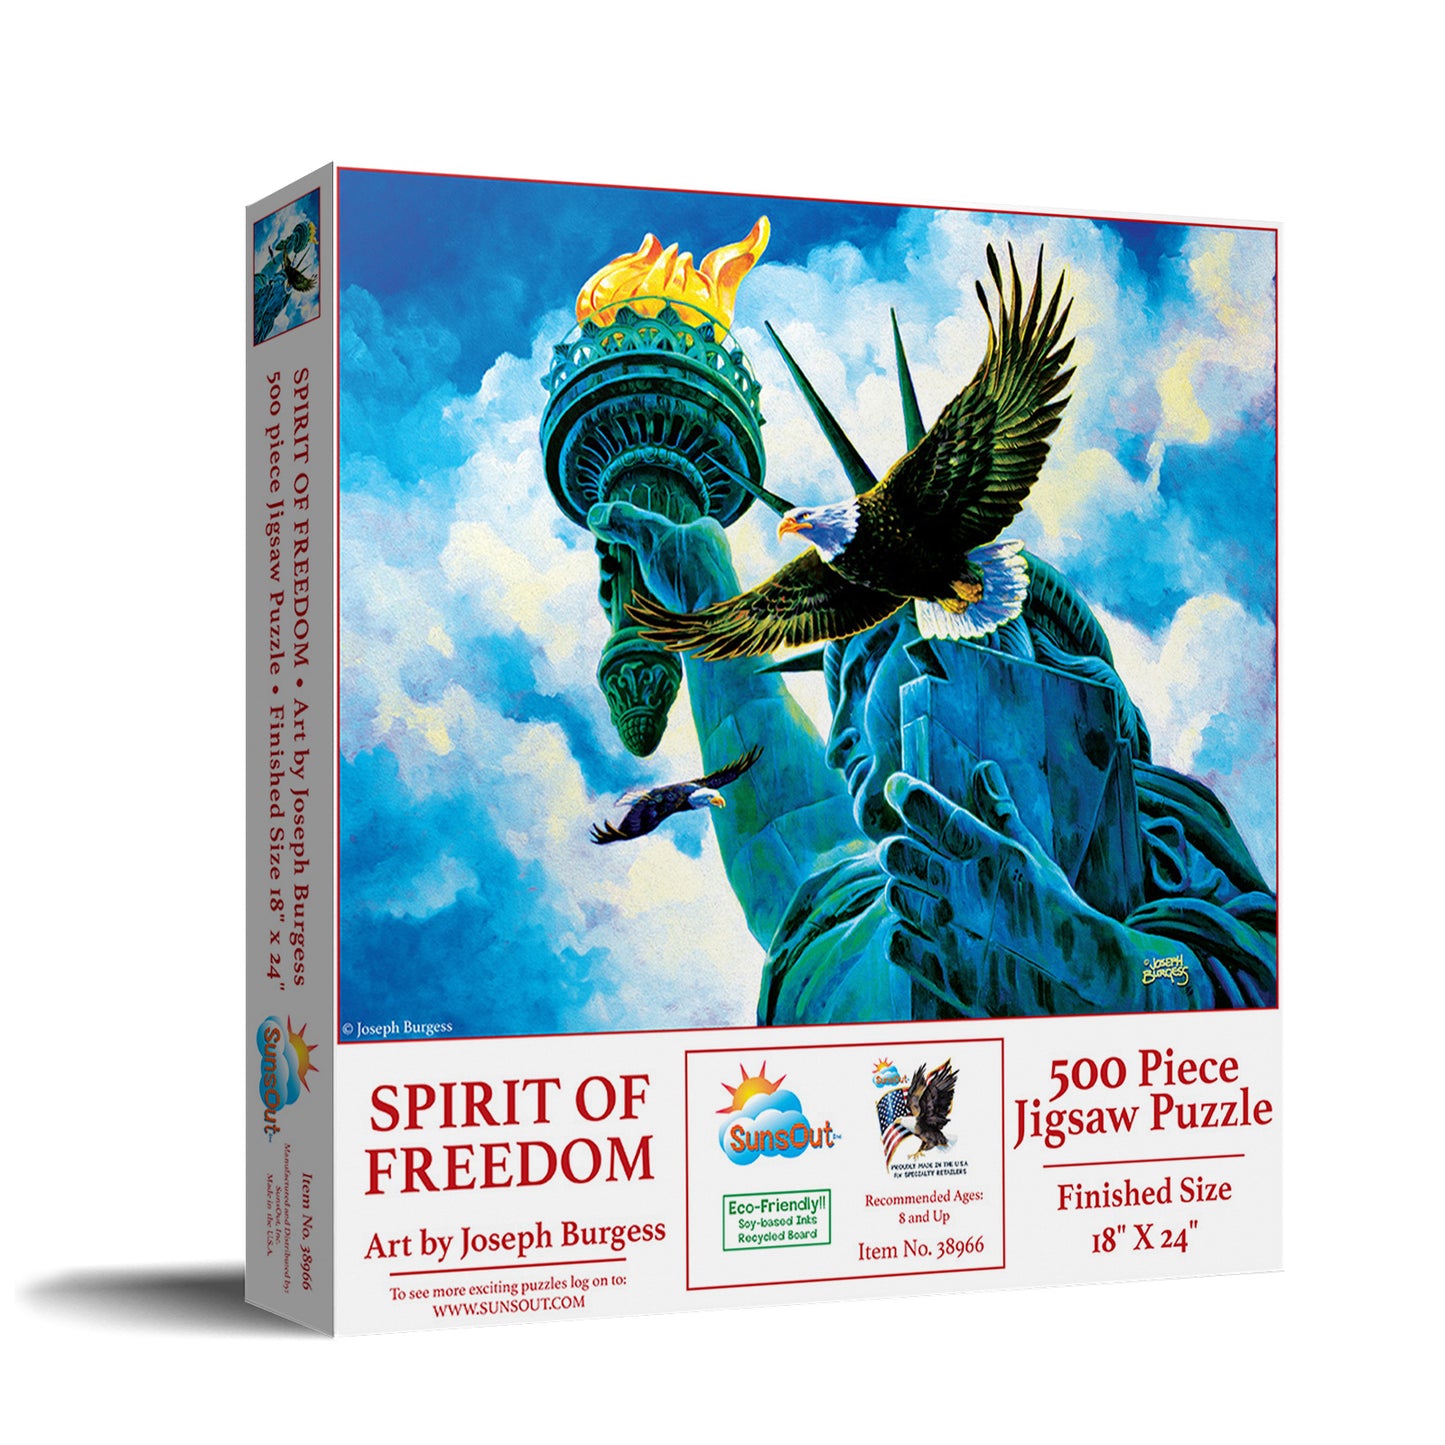 Spirit of Freedom - 500 Piece Jigsaw Puzzle